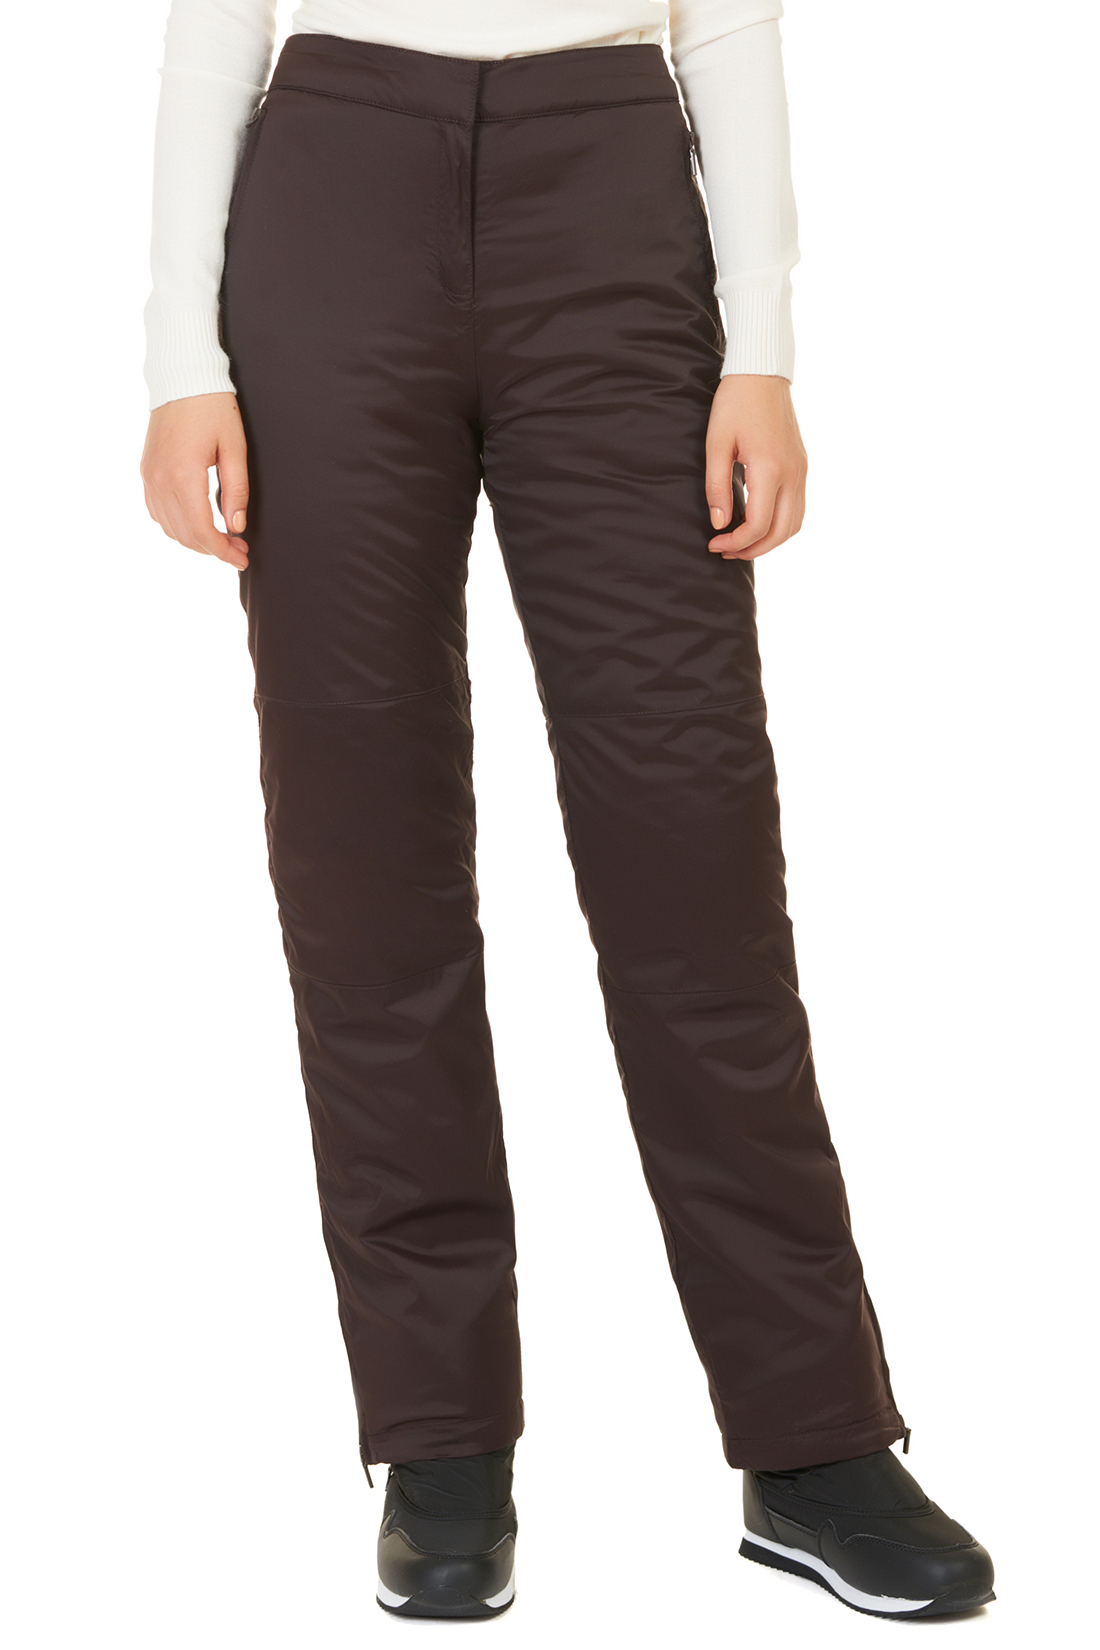 Утеплённые брюки с молниями (арт. baon B297505), размер XL, цвет коричневый Утеплённые брюки с молниями (арт. baon B297505) - фото 1